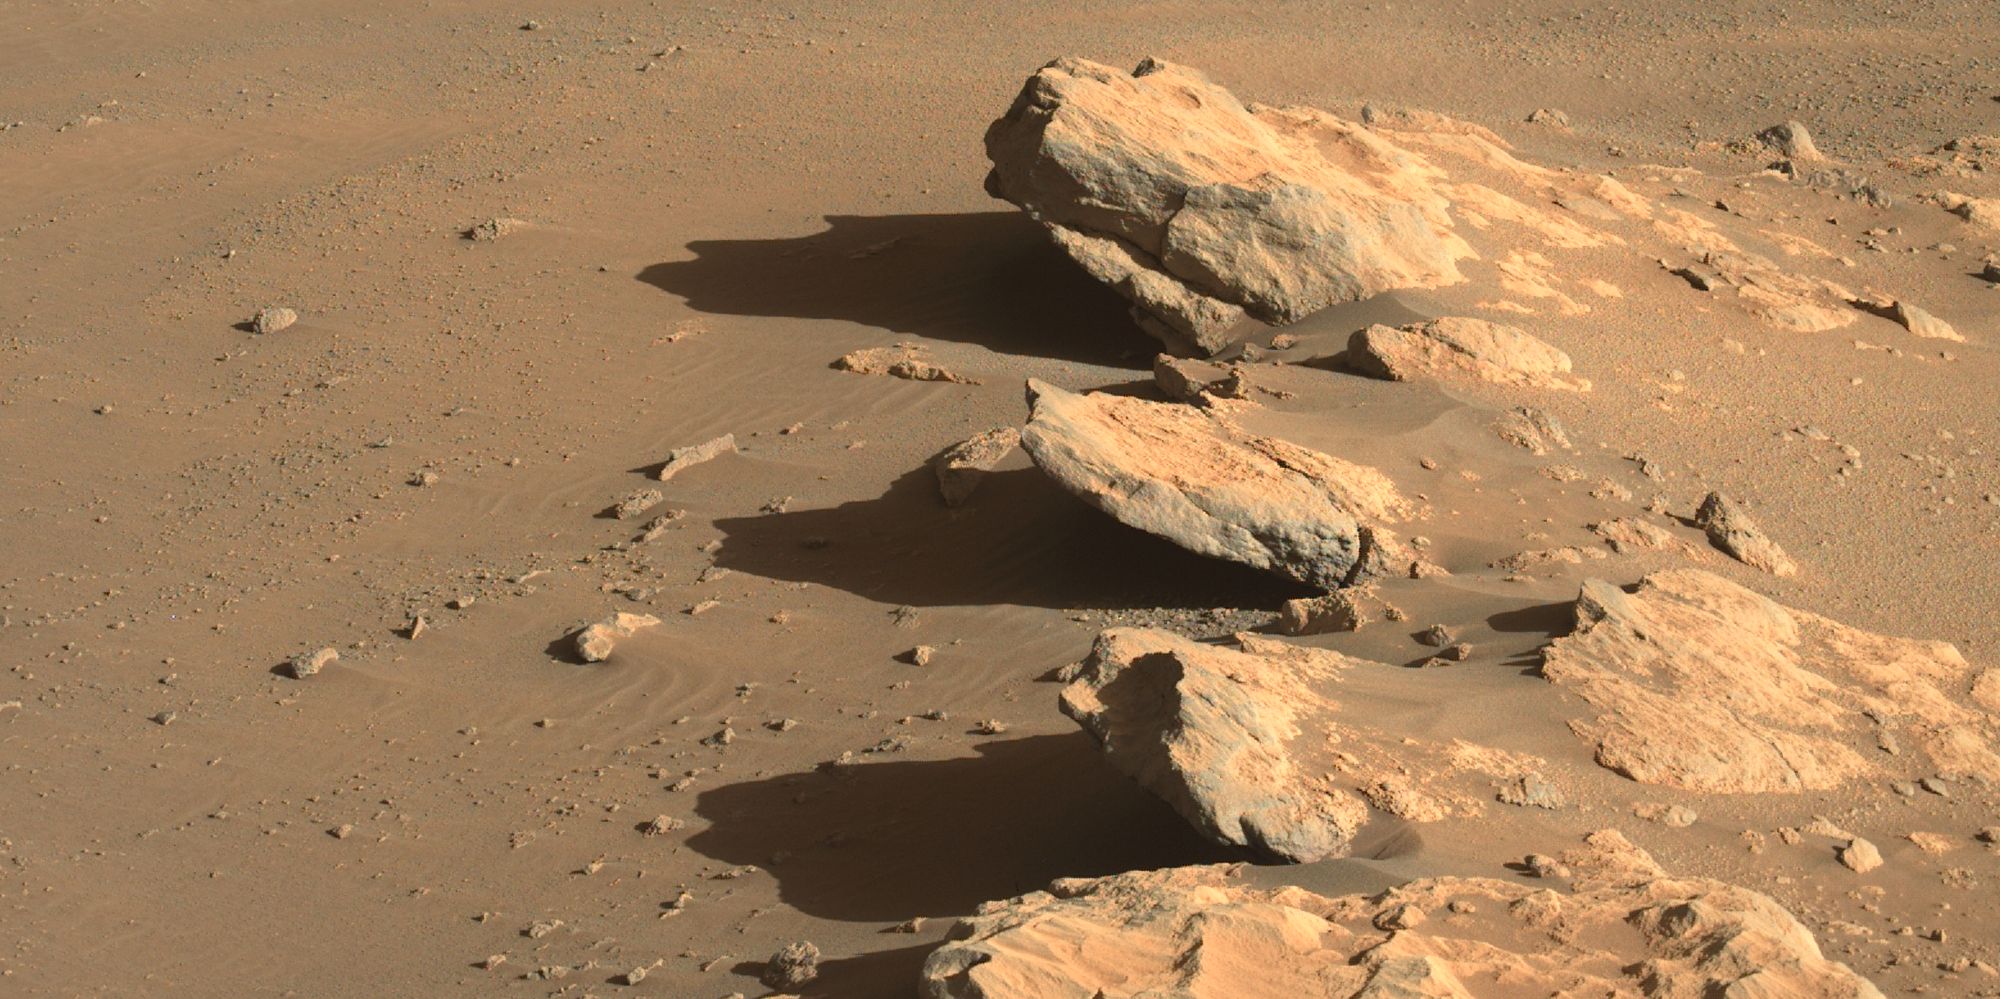 Nueva foto de perseverancia muestra tres rocas ‘tomando el sol’ en Marte